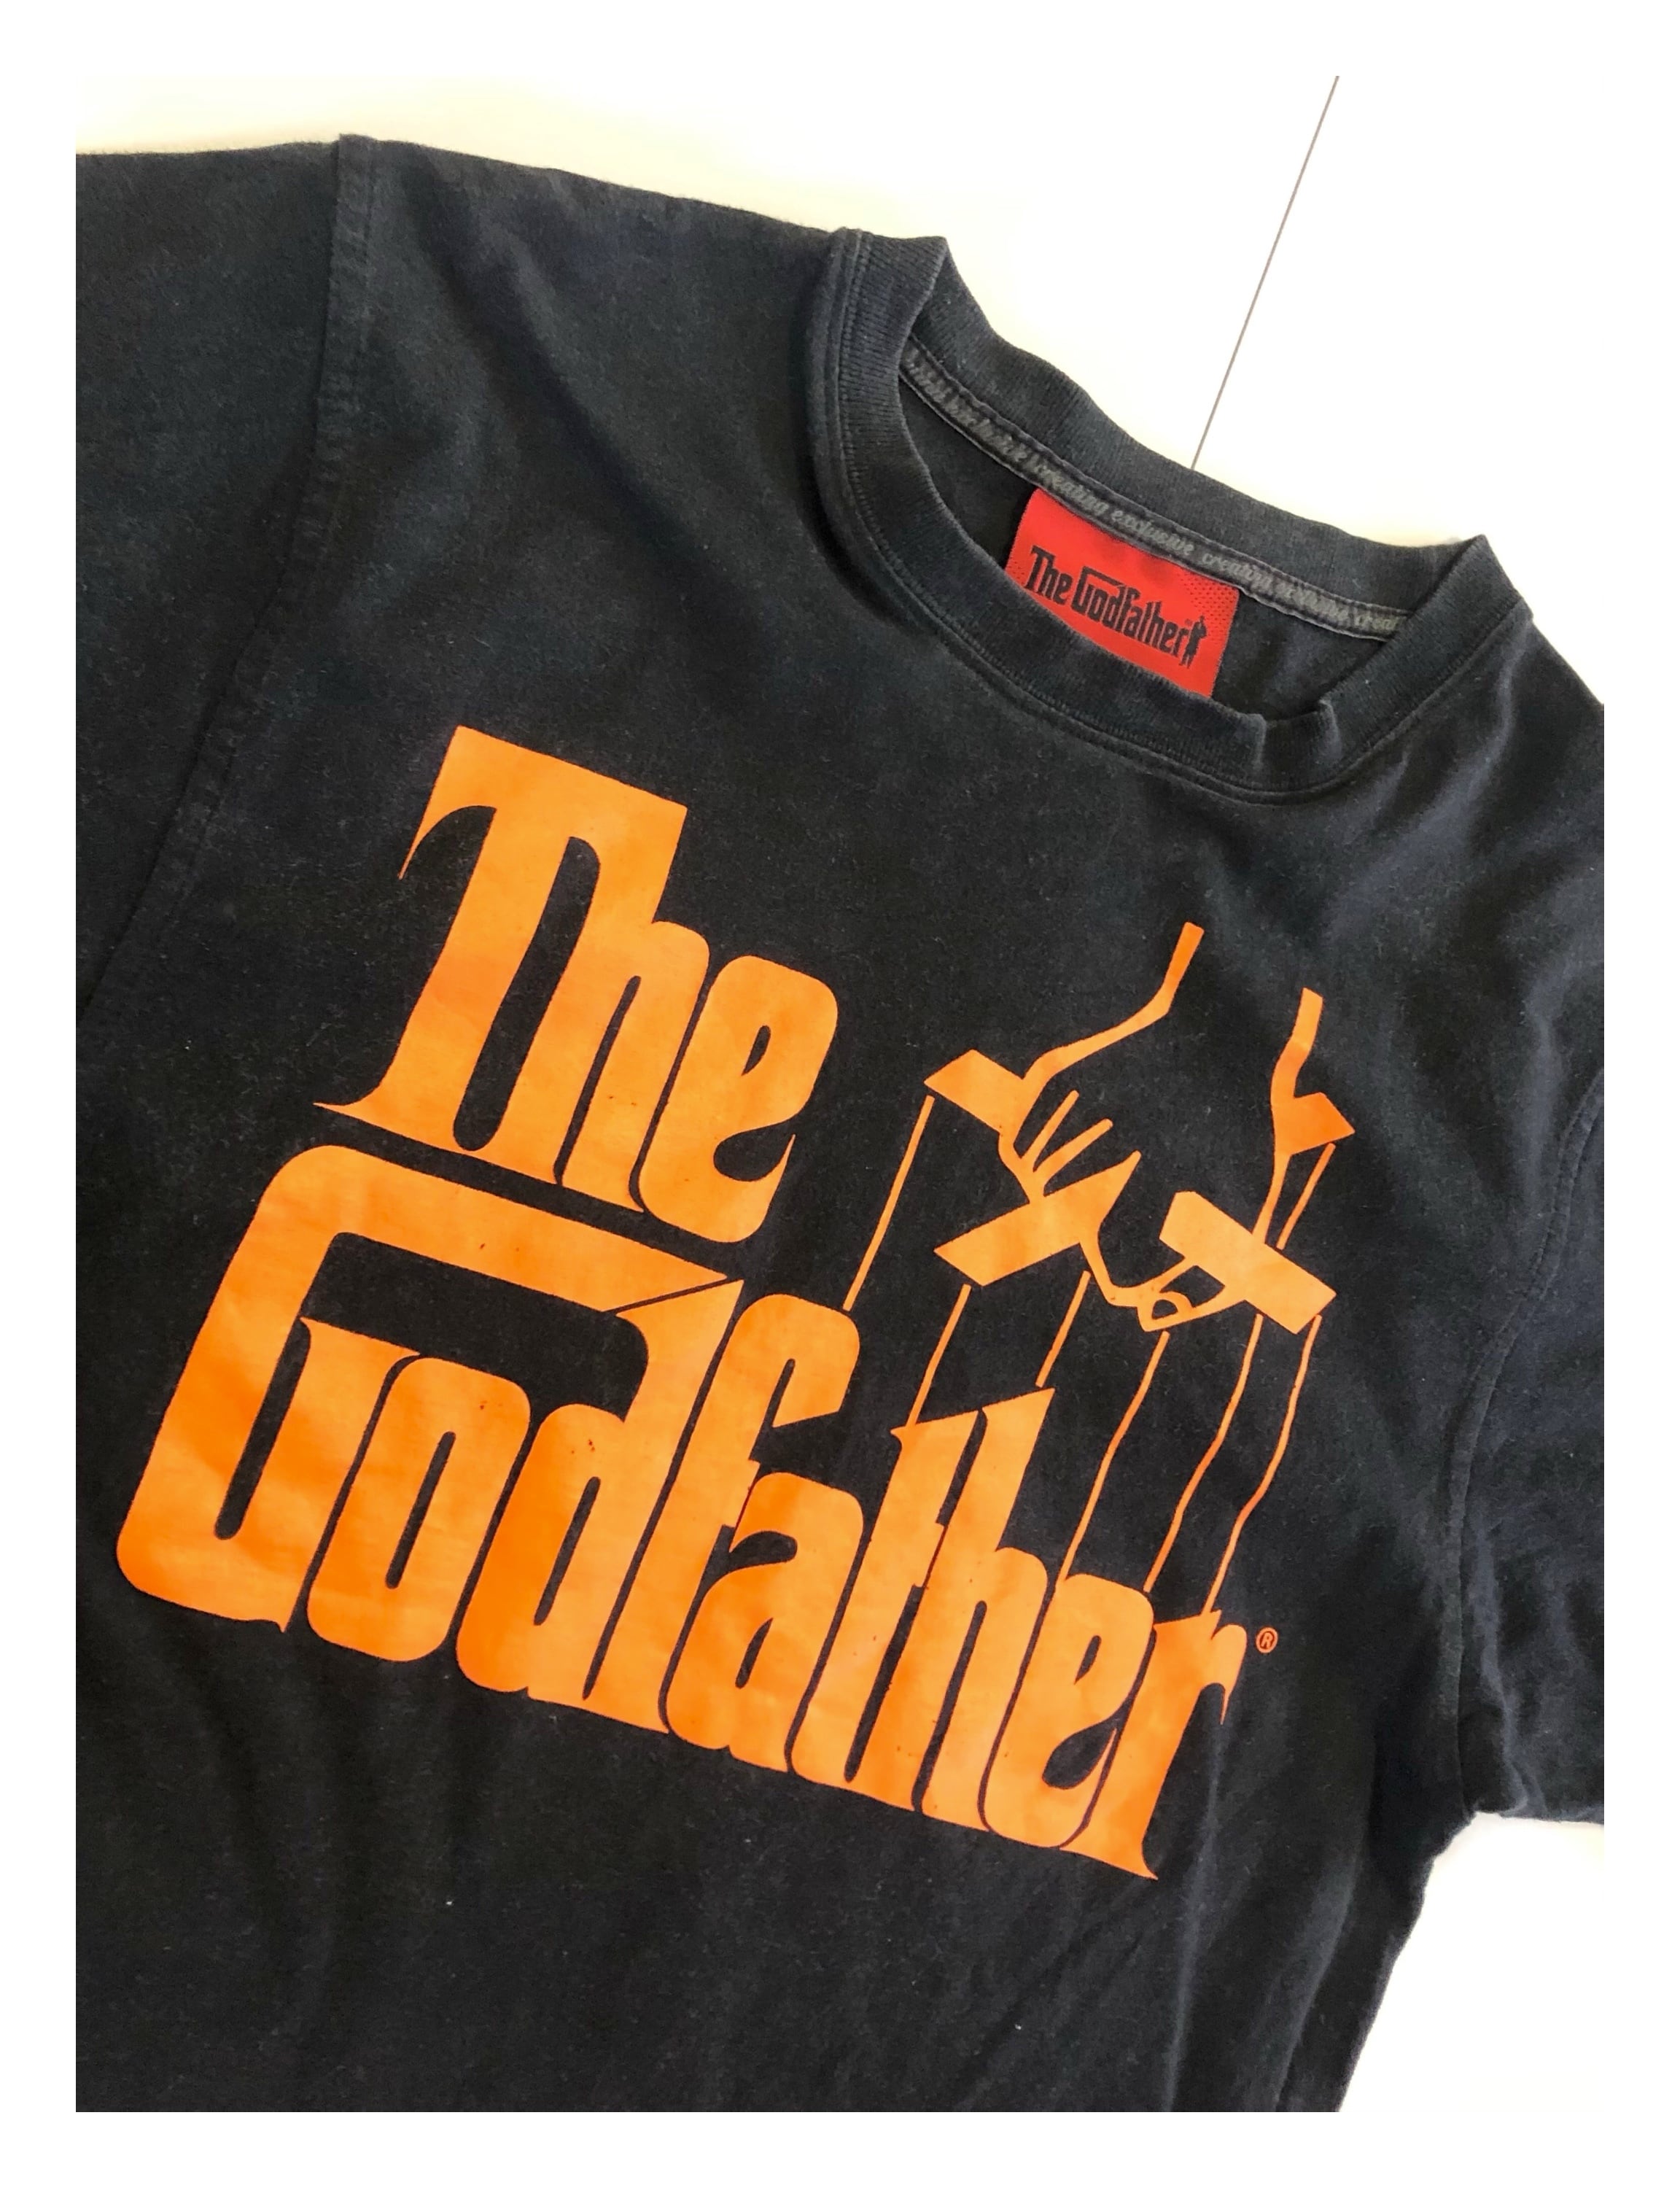 TheGodfather/ゴッドファーザー/オリジナルプリント/パロディ/TEE